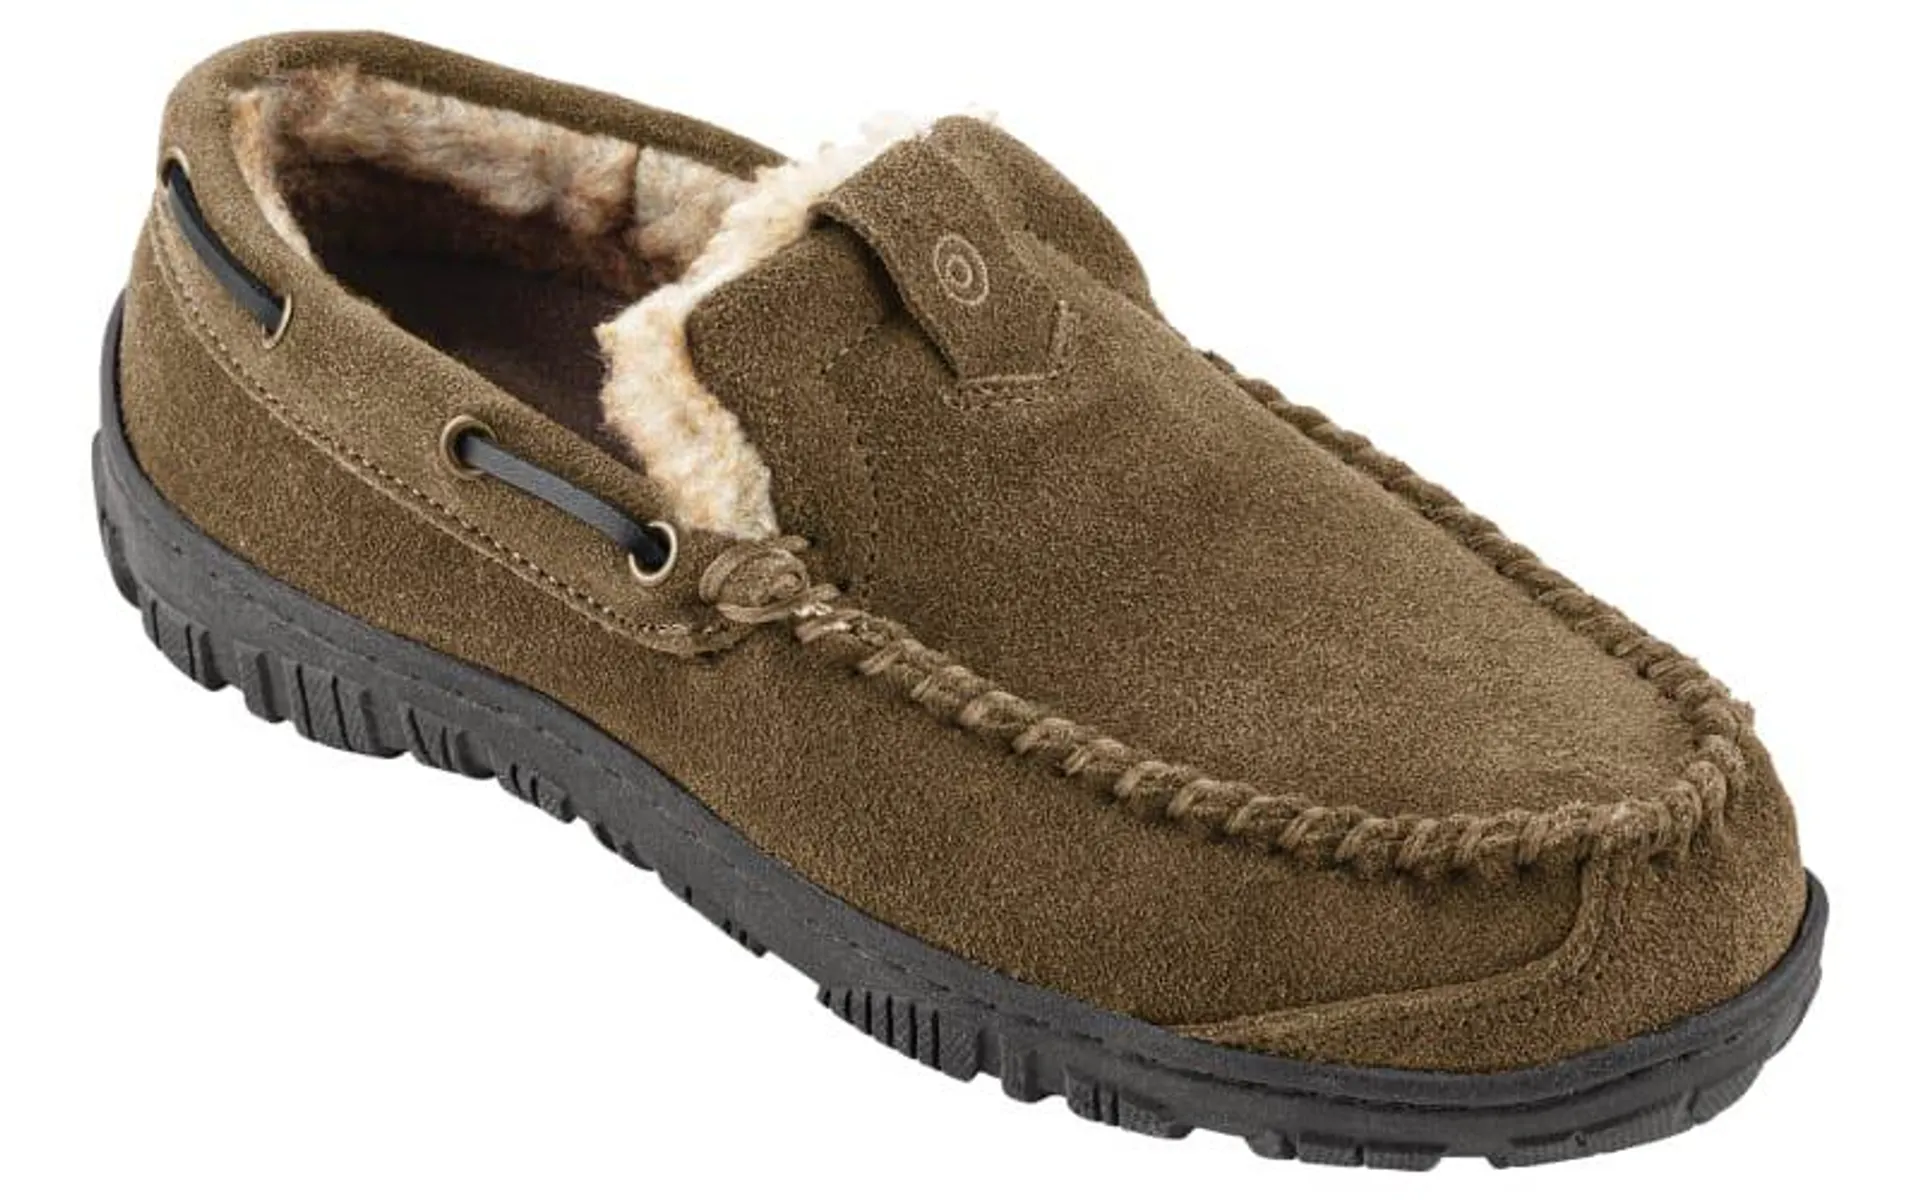 Clarks Hudson Bay II Moccasin Slip-On Shoes for Men